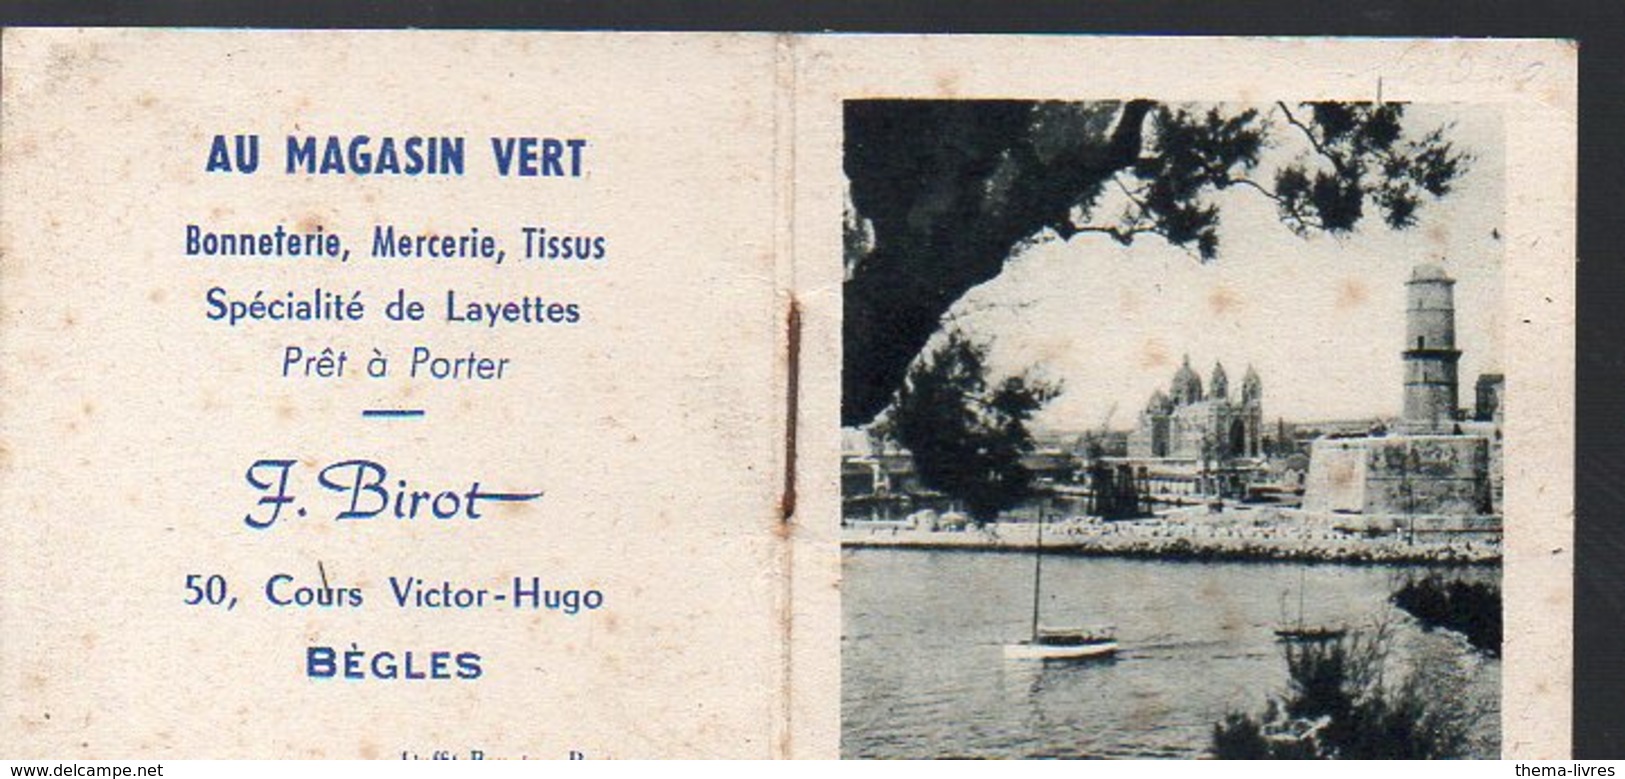 Bègles (33 Gironde) Calendrier 1957 Offert Par AU MAGASIN VERT  Bonneterie   Tissus (PPP13105) - Petit Format : 1941-60